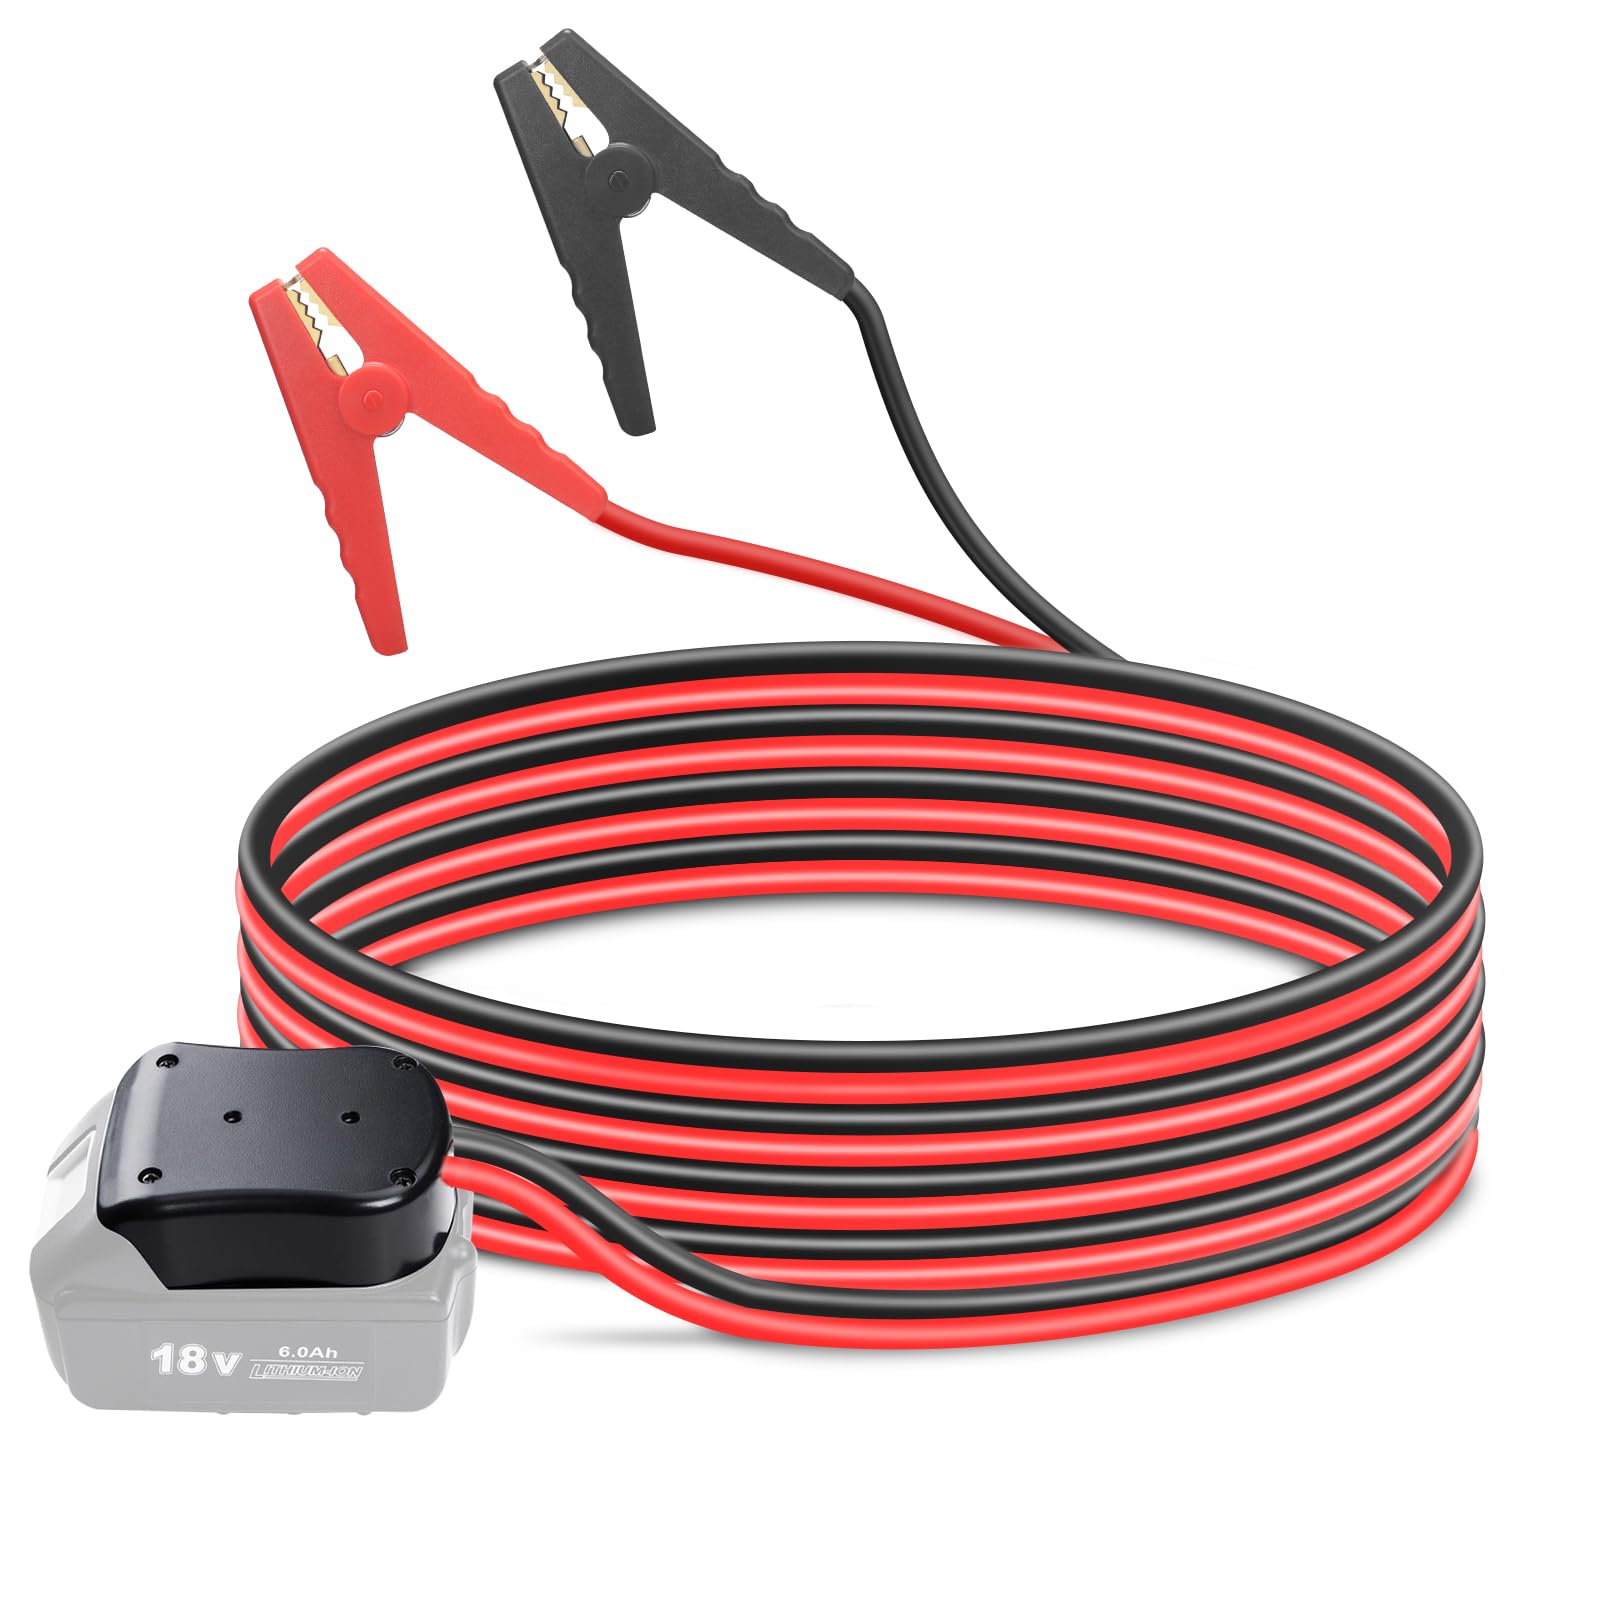 HUGOOME Kabel Power Tool Line, 1.5m 8.37mm² Starthilfekabel Klemmen für Makita BL18 18V Akku-Starter, Automotive Booster Kabel von HUGOOME